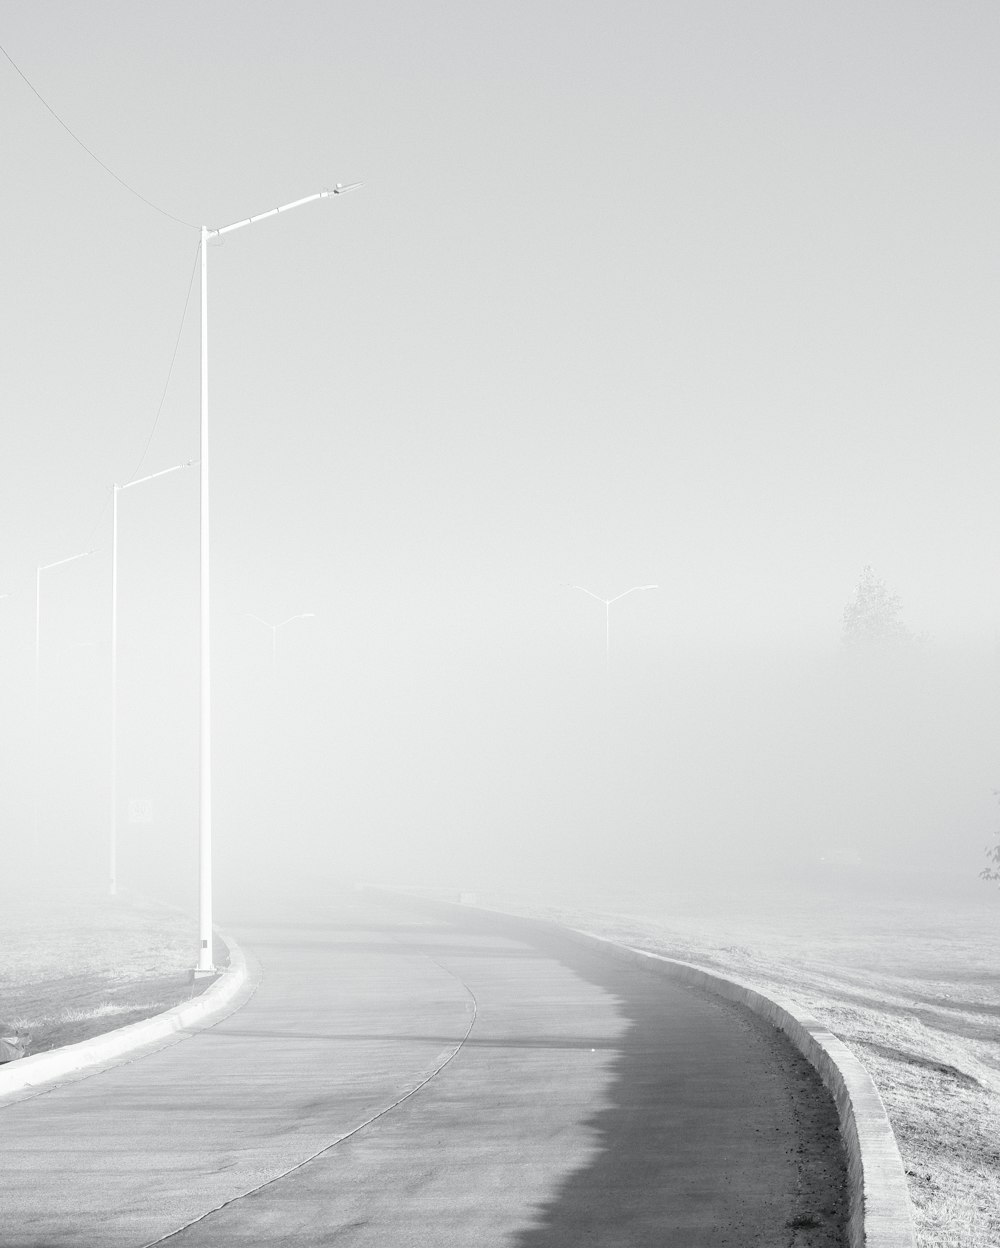 안개 낀 도로의 흑백 사진